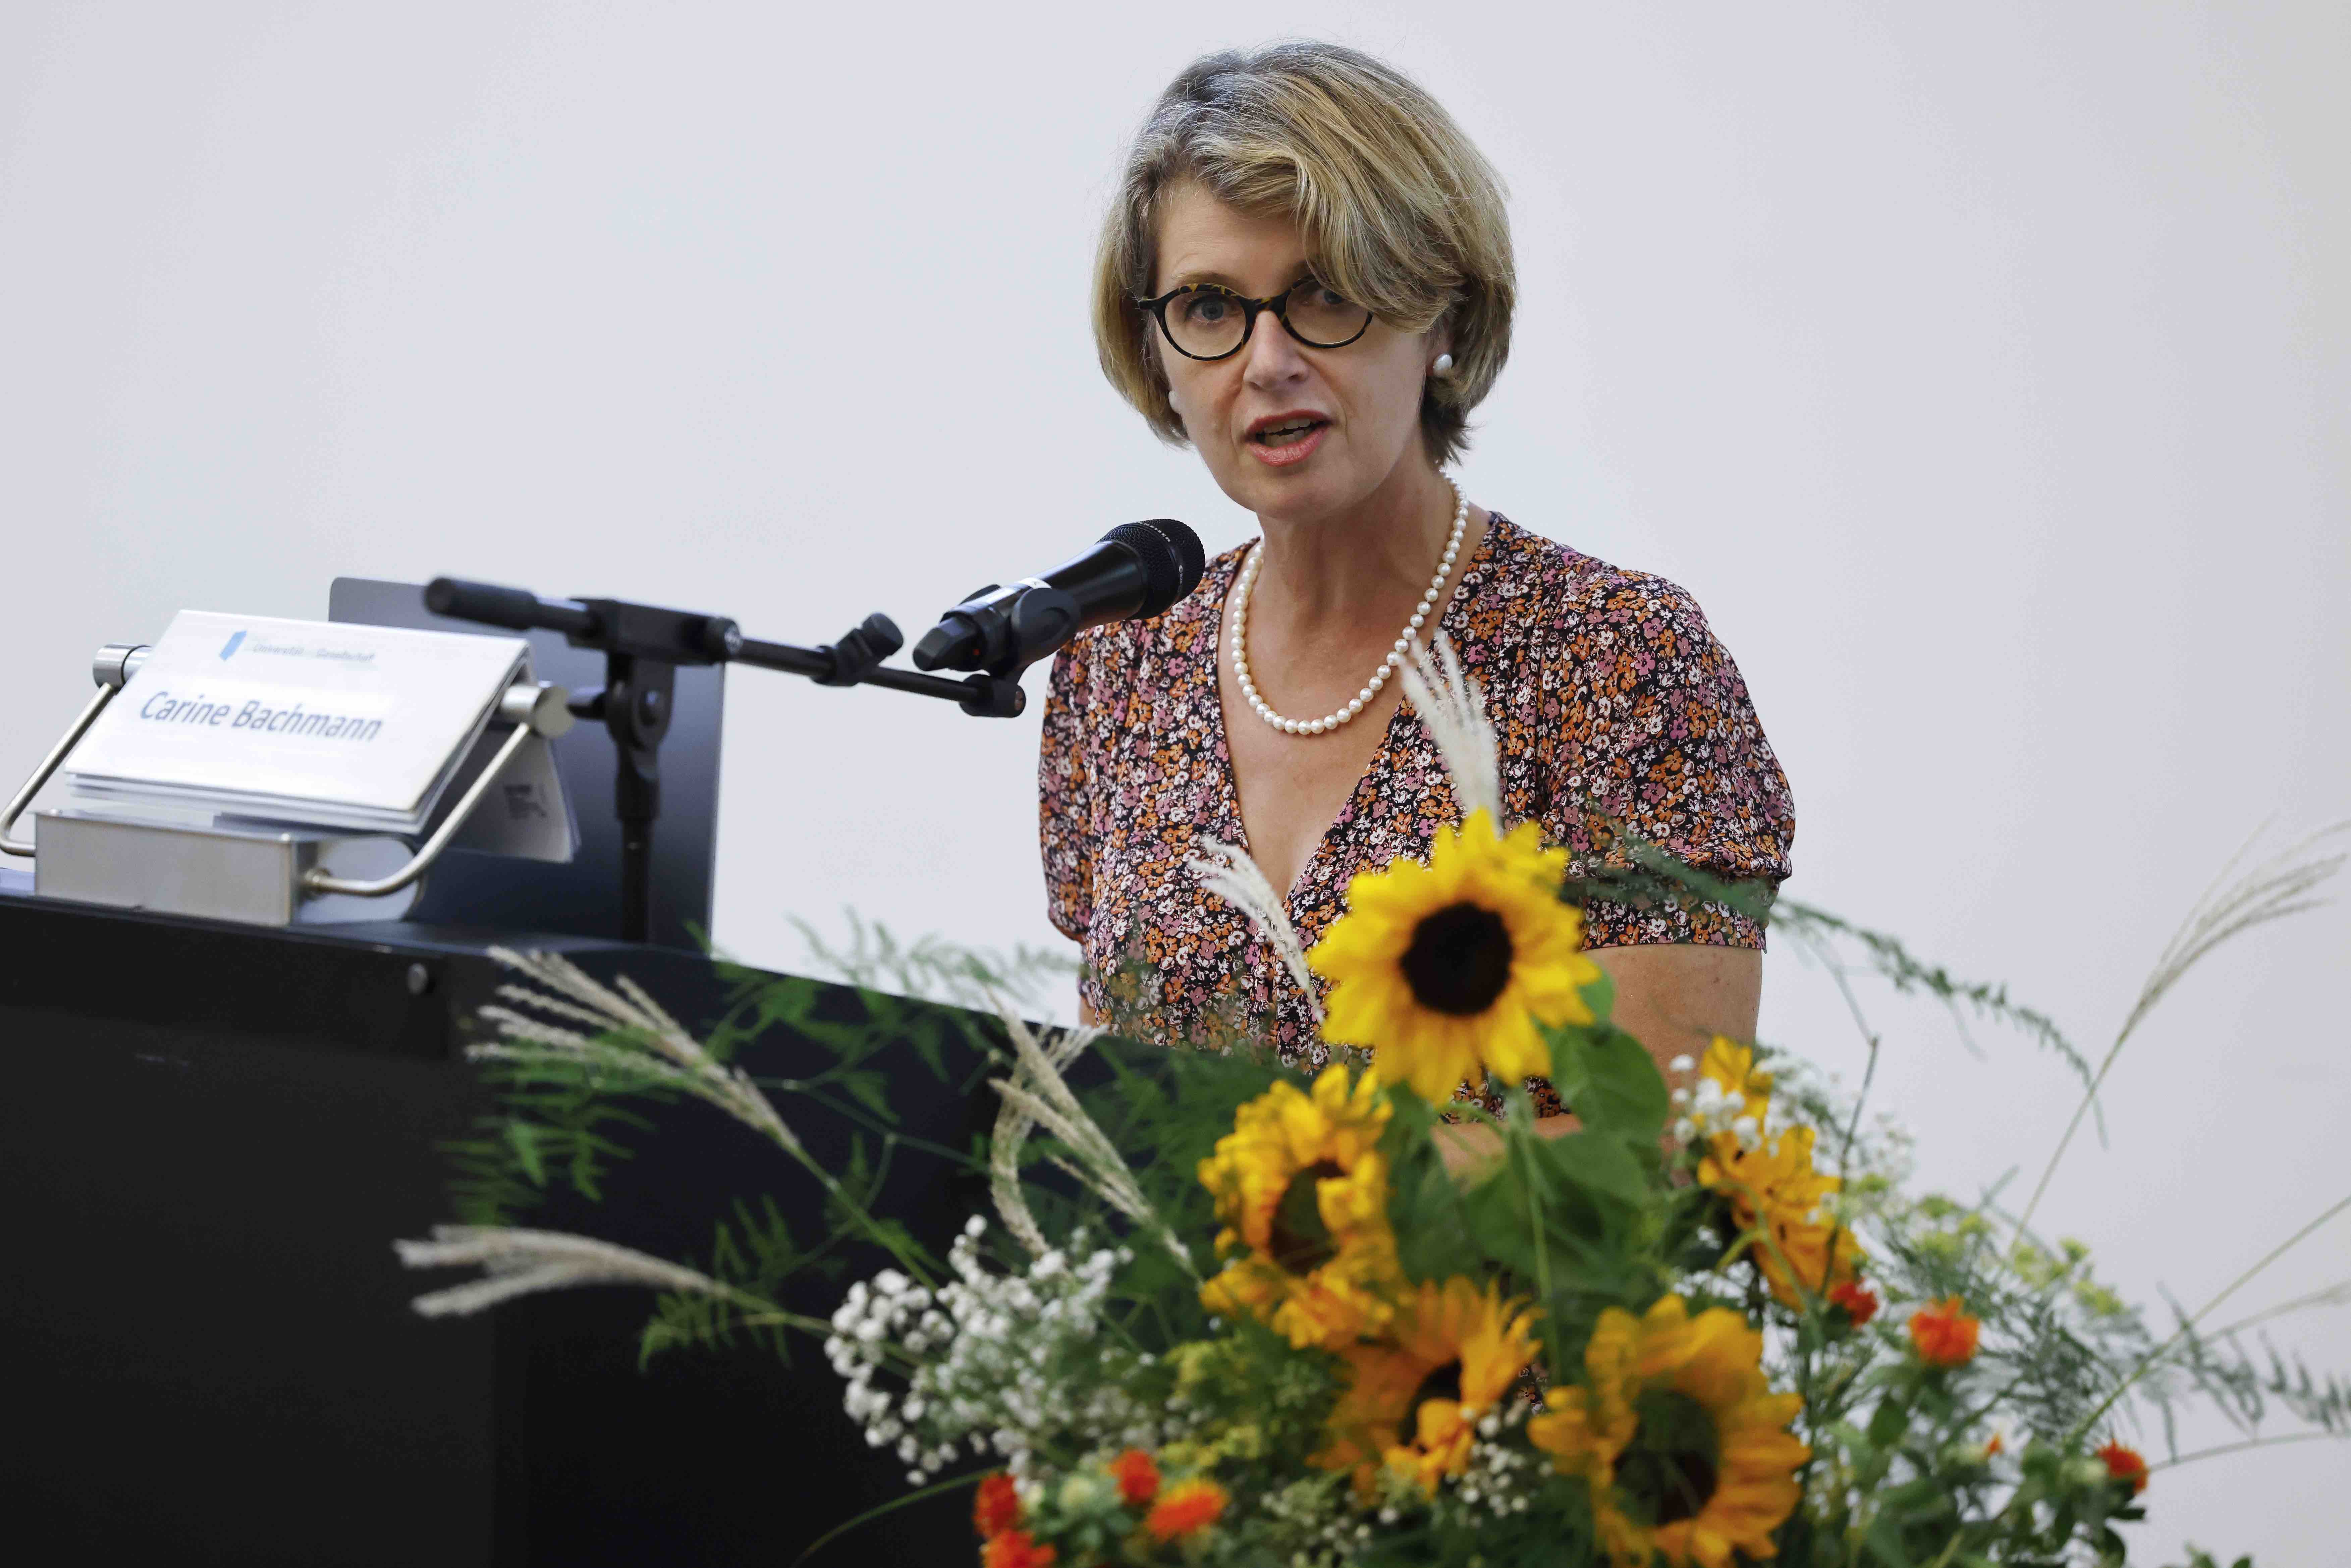 Die Referentin Carine Bachmann steht hinter einem Rednerpult. Sie trägt ein rotweiss geblümtes Kleid und eine Perlenkette. Neben ihr ist ein Blumenstrauss mit Sonnenblumen erkennbar.